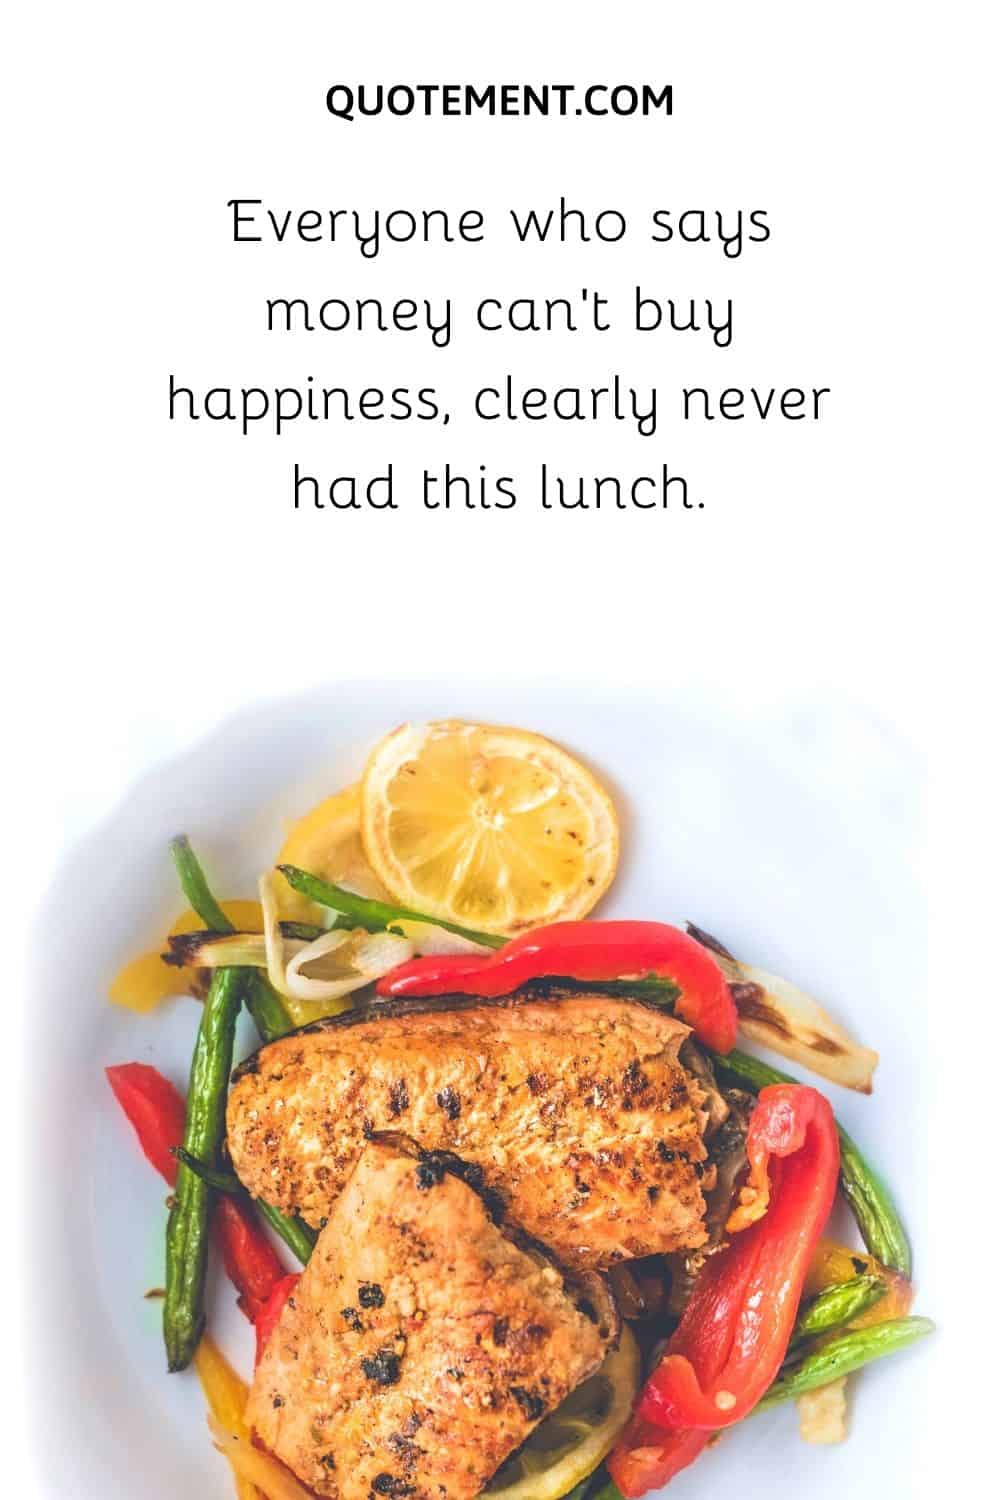 Todos los que dicen que el dinero no puede comprar la felicidad, claramente nunca han tenido este almuerzo.